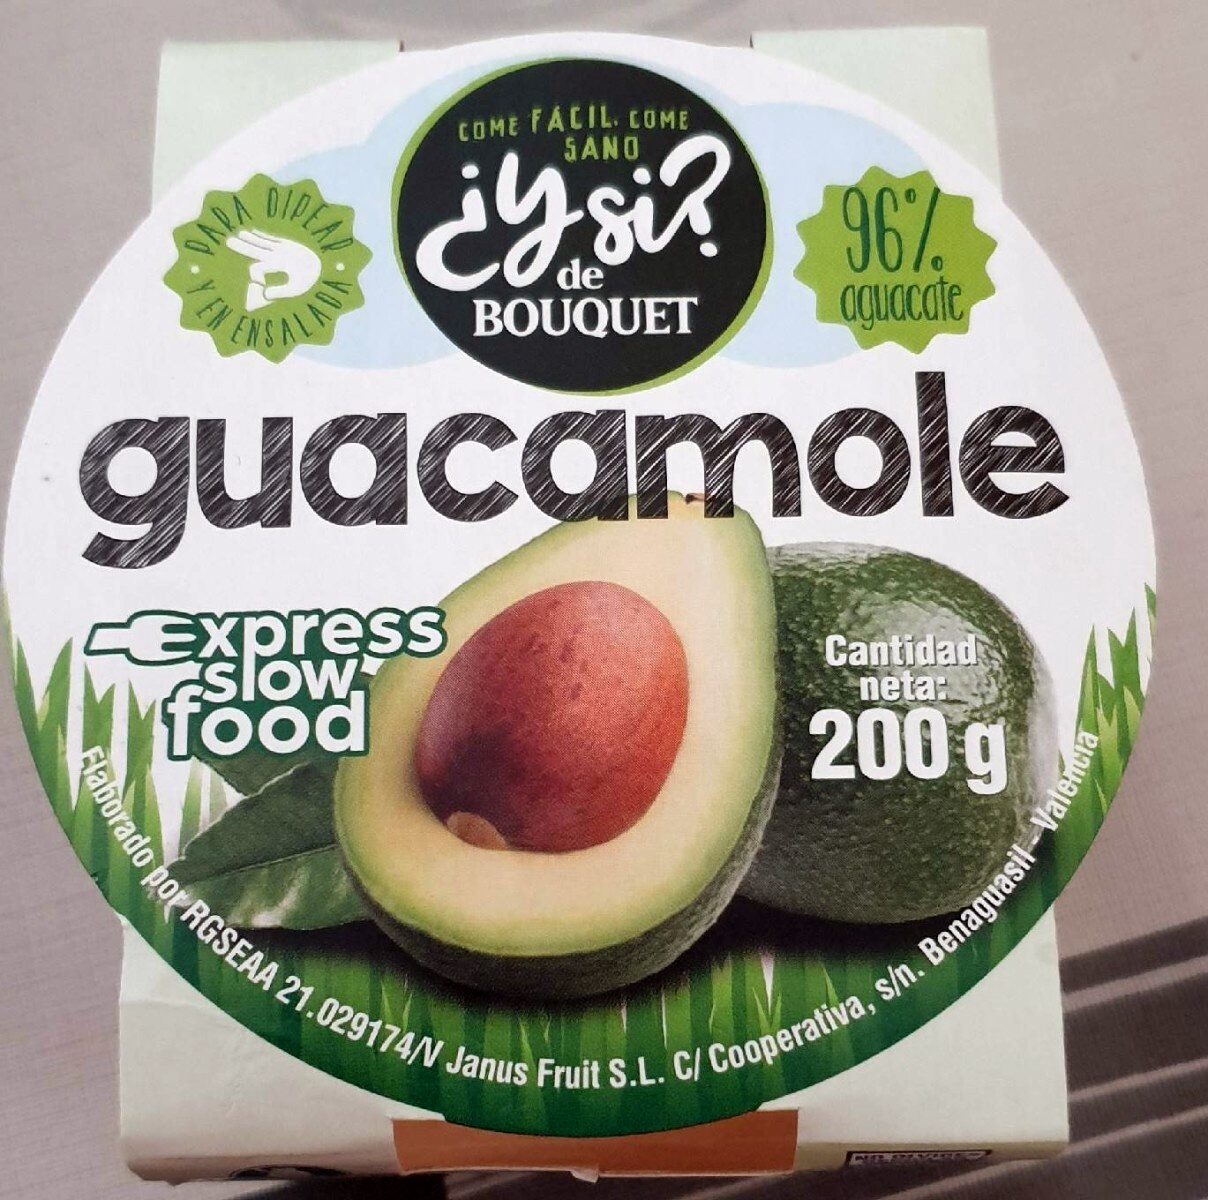 Guacamole - Product - es